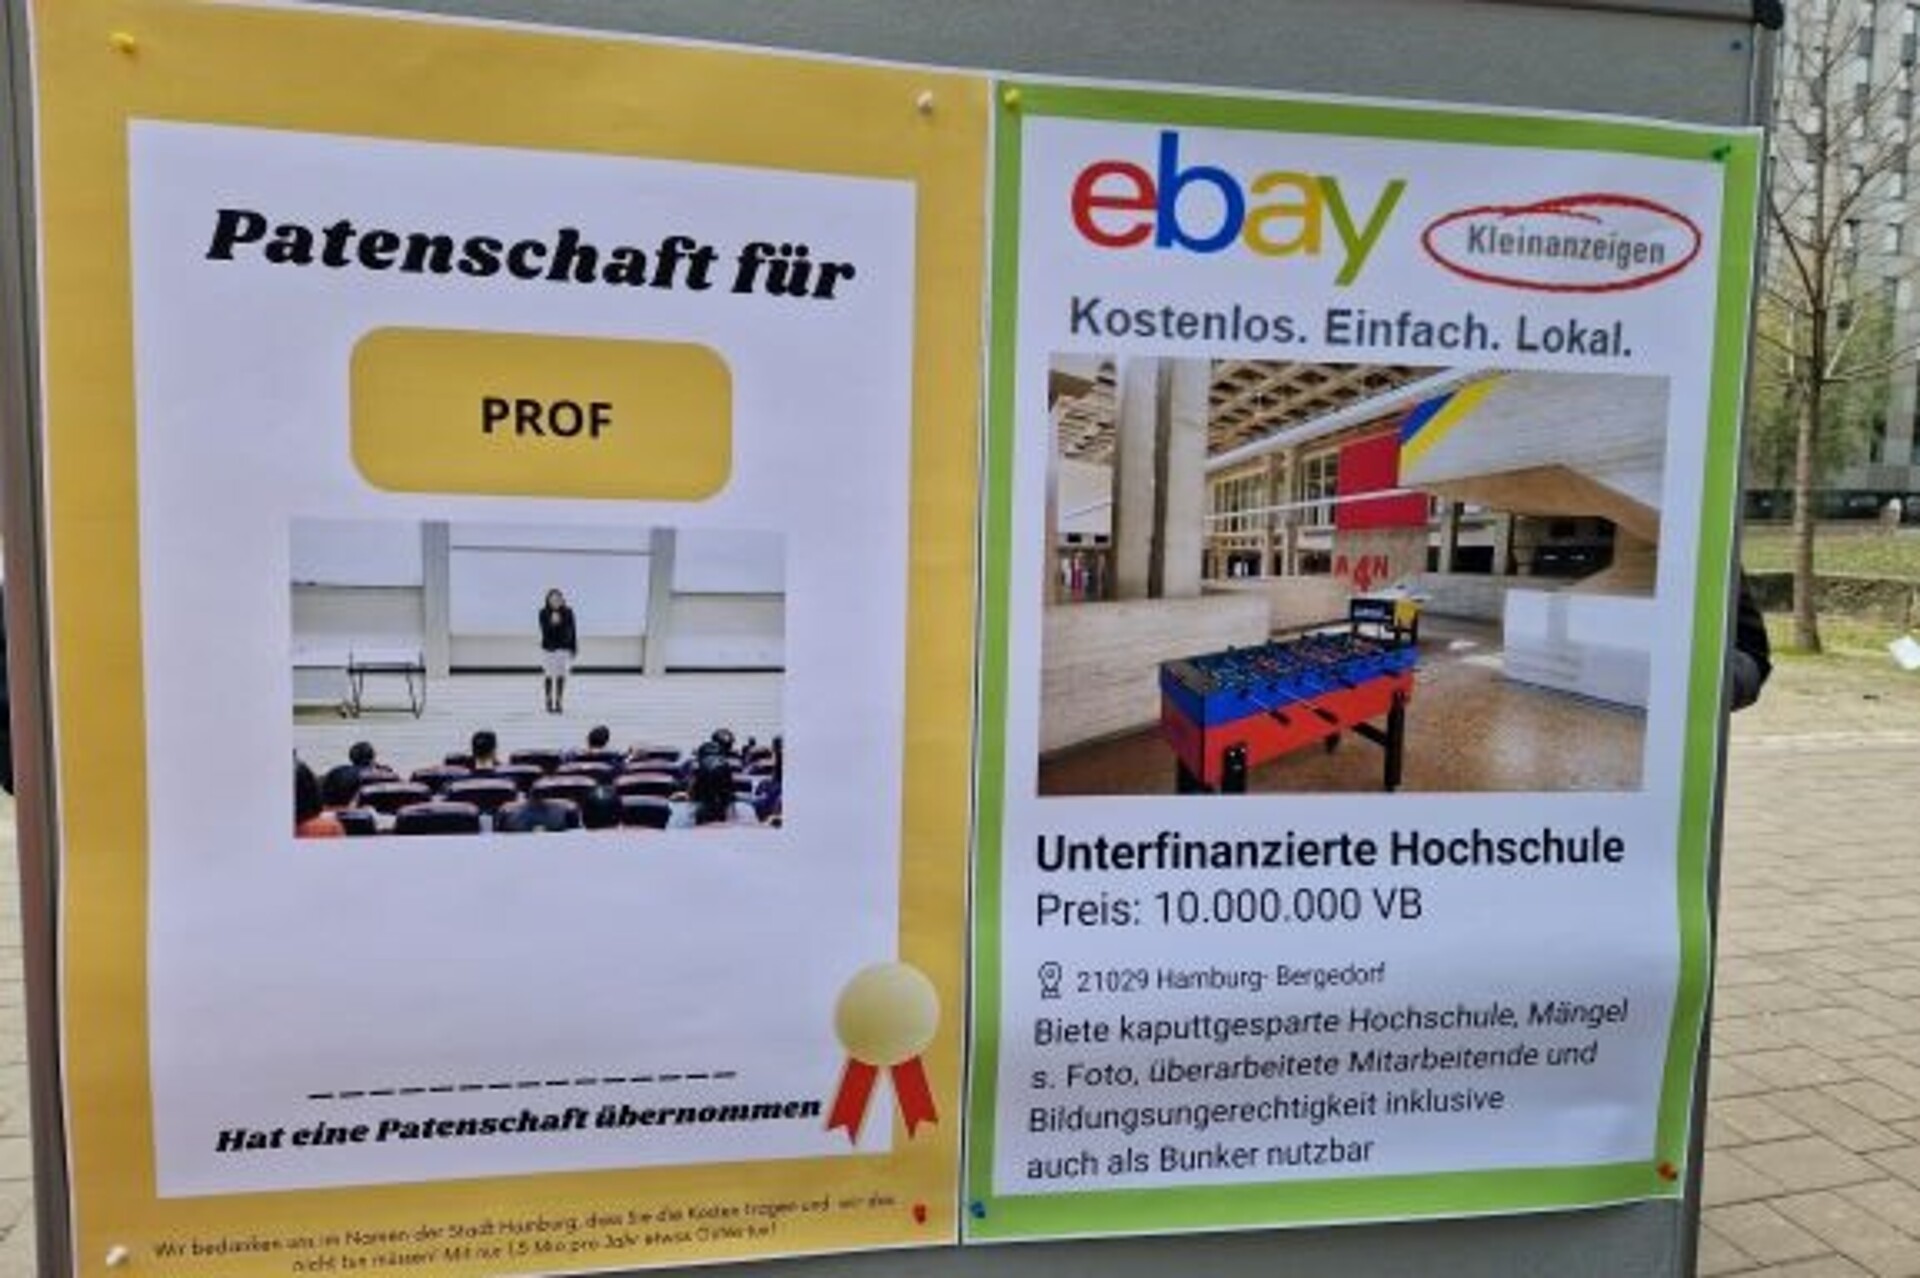 Das Foto zeigt eine Stellwand mit zwei Postern. Auf dem einen Poster wird eine Patenschaft für eine*n Professor*in verkauft. Auf dem anderen ist eine ebay Kleinanzeige abgebildet: Unterfinanzierte Hochschule, Preis: 10.000.000 VB.